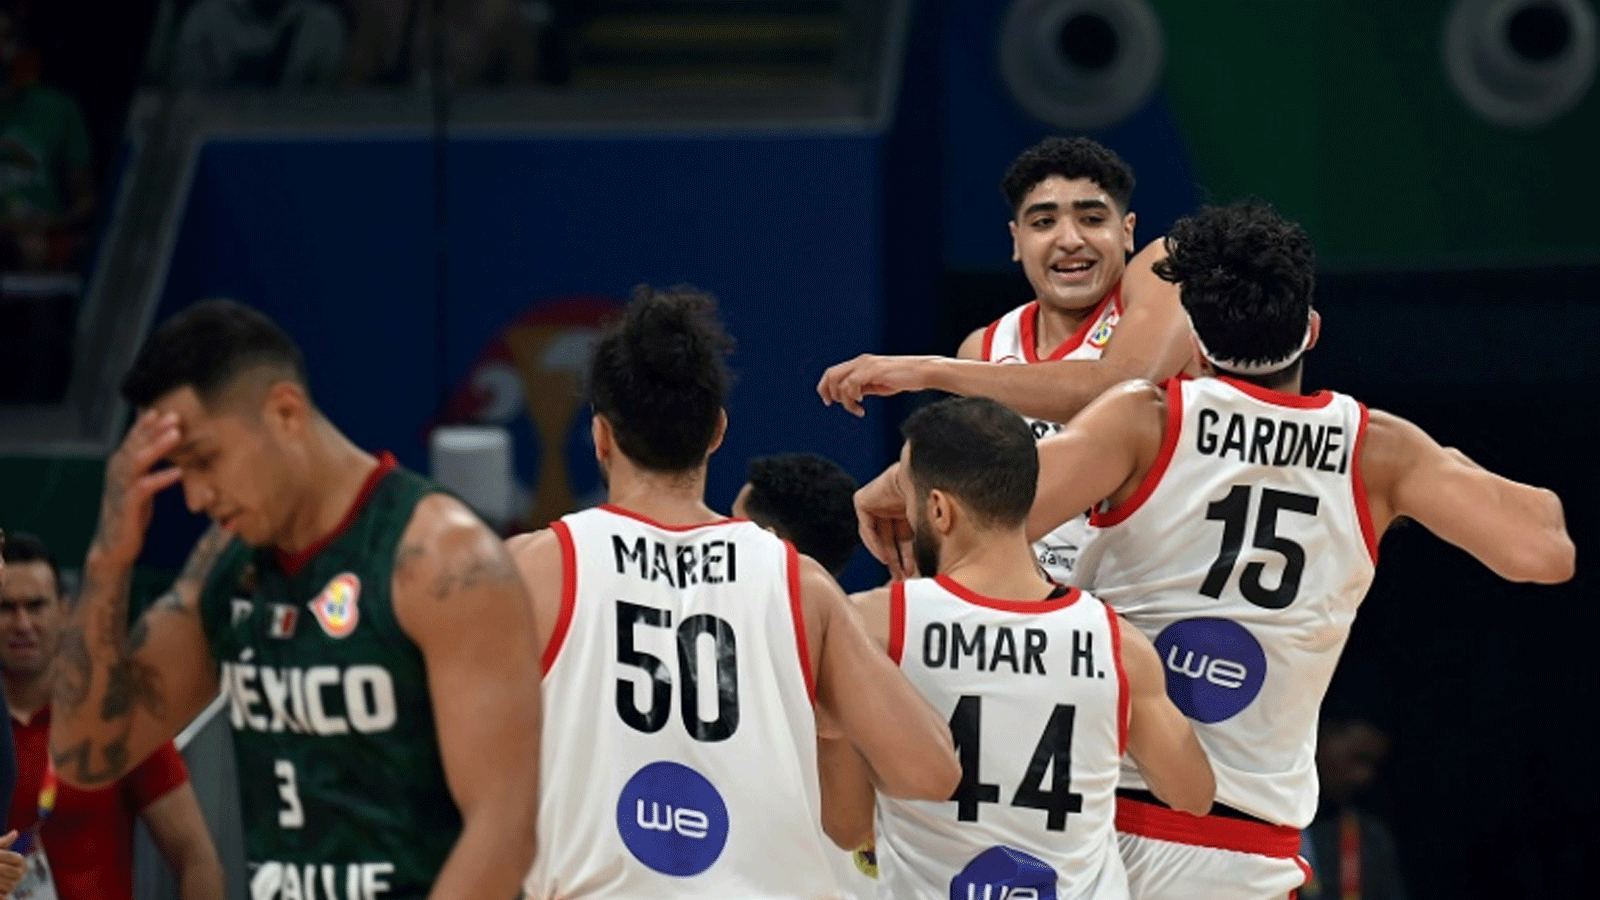 رد فعل لاعبي مصر بعد الفوز على المكسيك في المباراة التي جمعتهما ضمن المجموعة الرابعة لكأس العالم لكرة السلة في مانيلا في 29 آب/أغسطس 2023